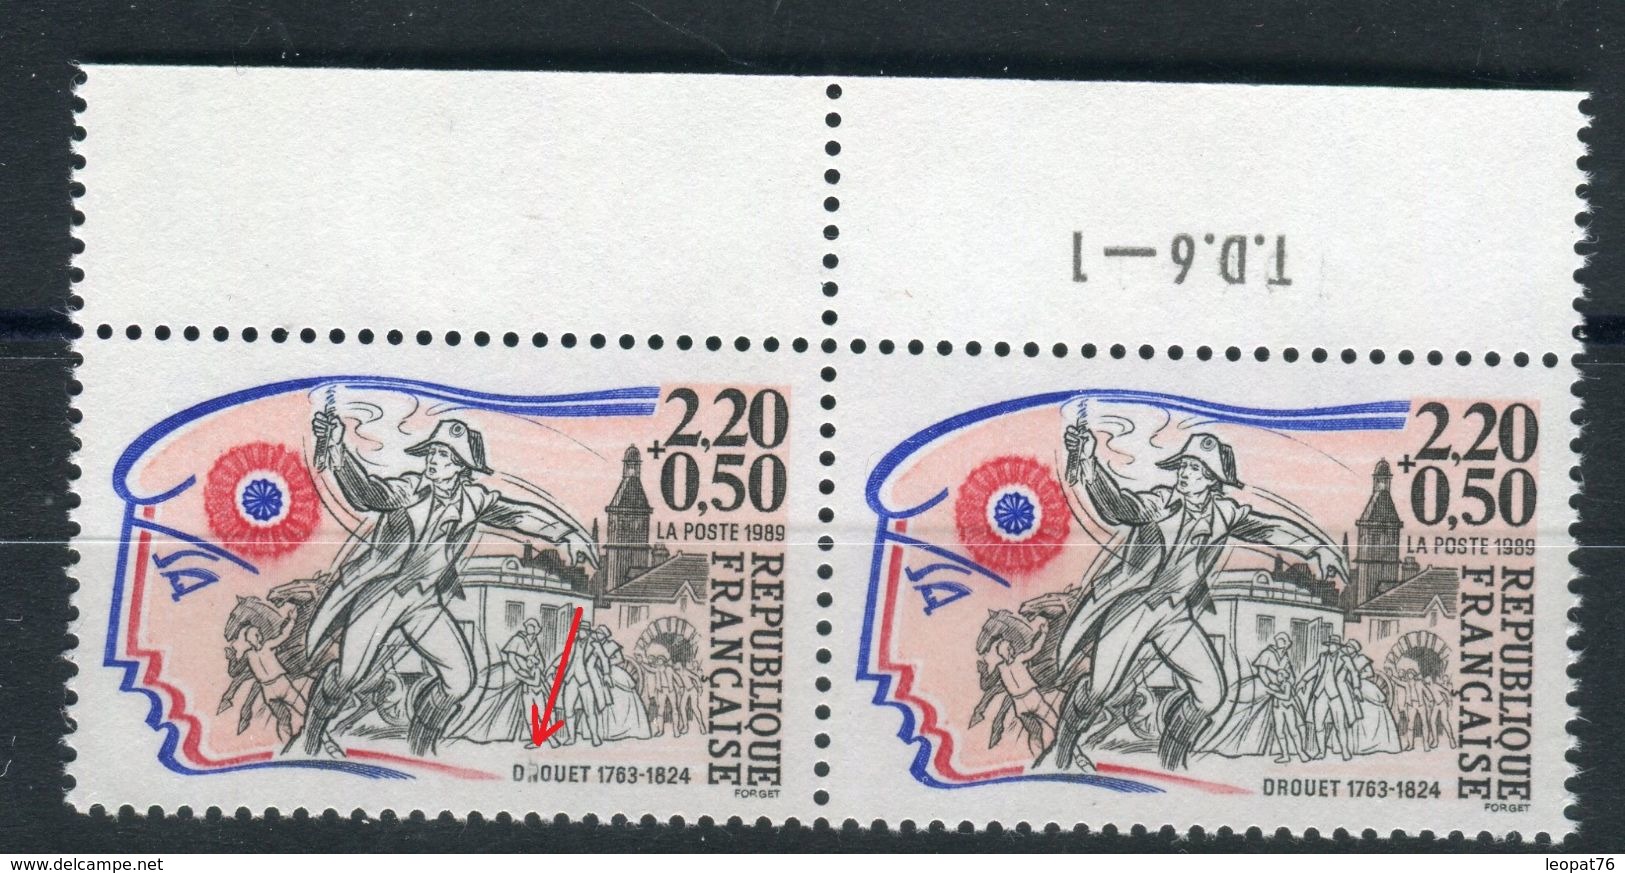 France - N° Yvert 2569 / Maury 2572 , Variété  " Lettre Tronquée "  Tenant à Normal  Neufs Luxes - Ref V1 - Unused Stamps